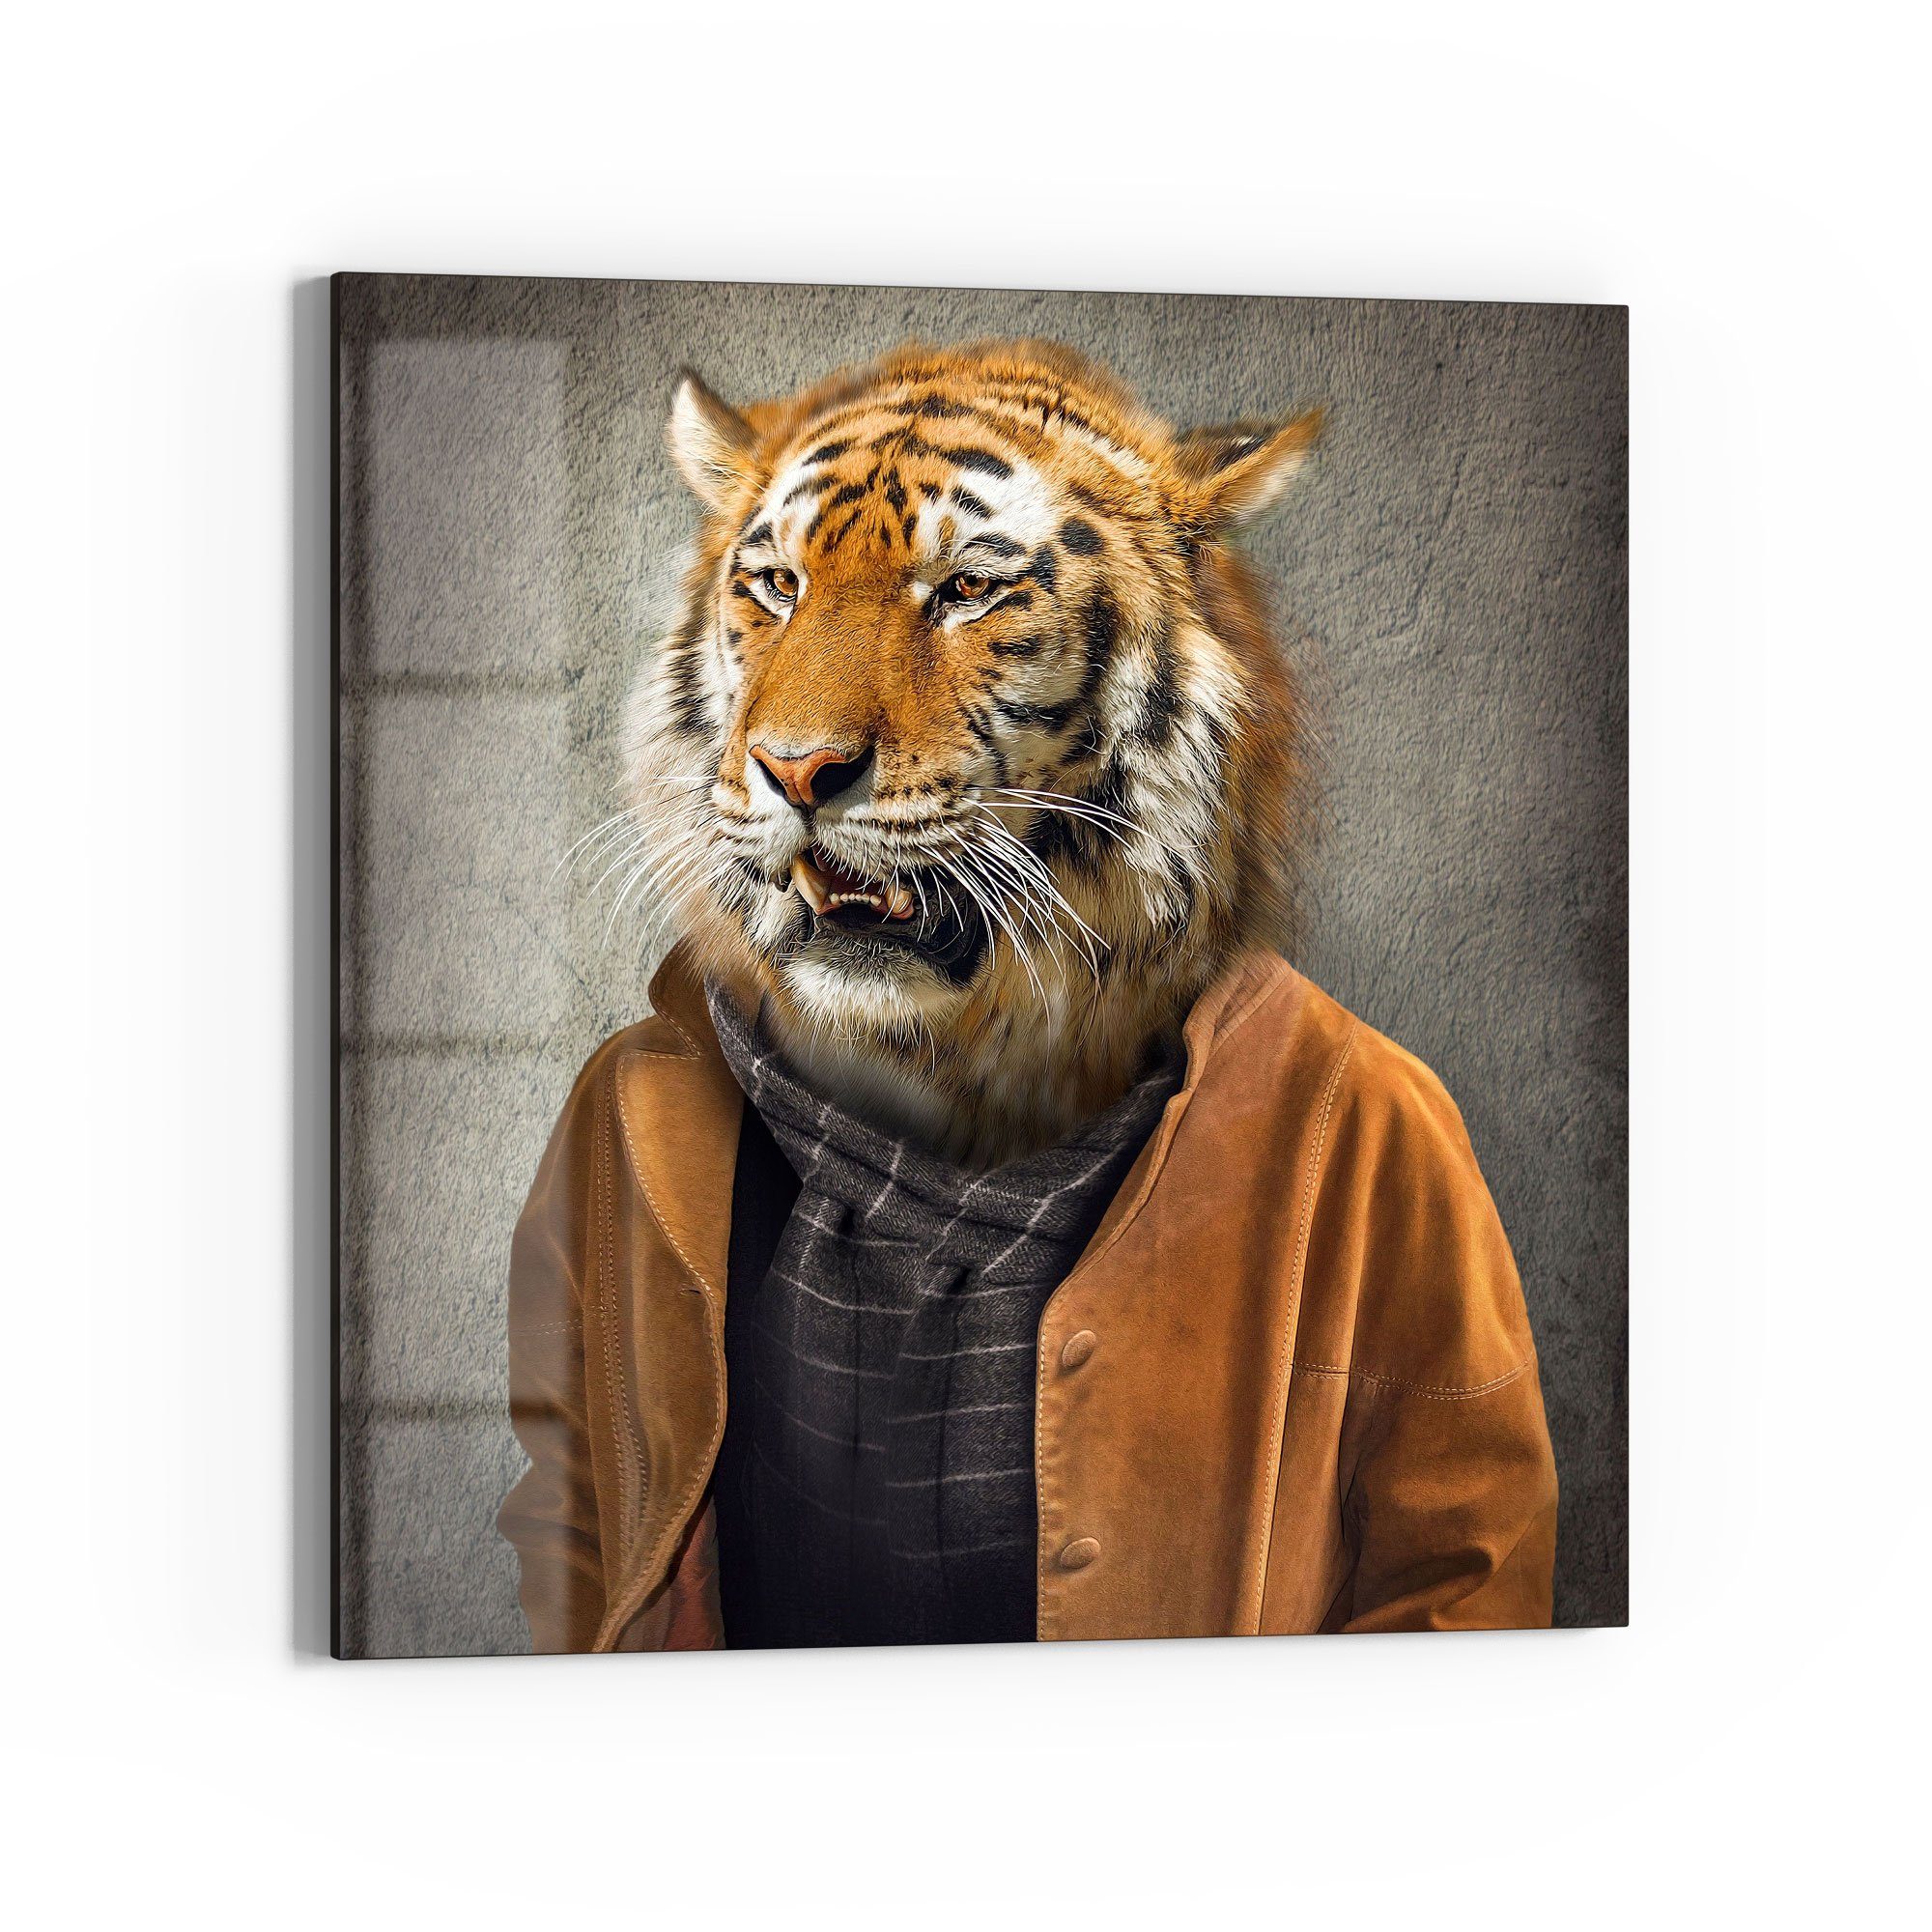 DEQORI Glasbild \'Tiger in Menschengestalt\', \'Tiger in Menschengestalt\',  Glas Wandbild Bild schwebend modern